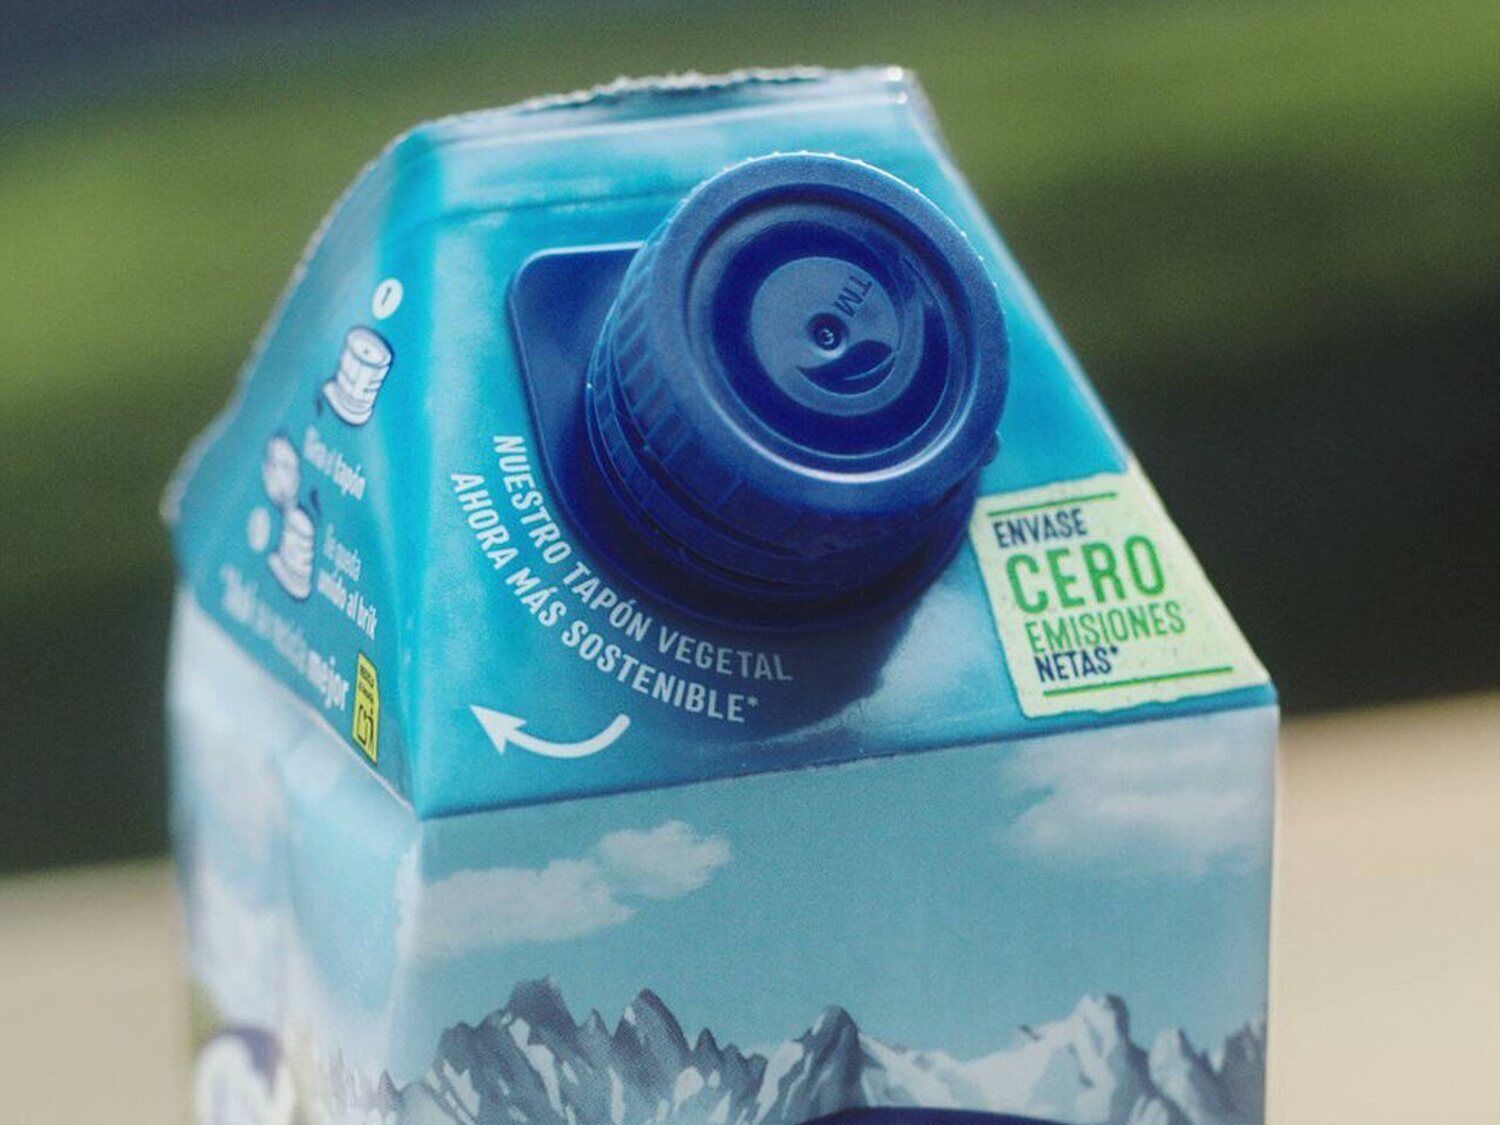 Nuevo tapón de los bricks de leche que desespera a los consumidores: la razón del cambio